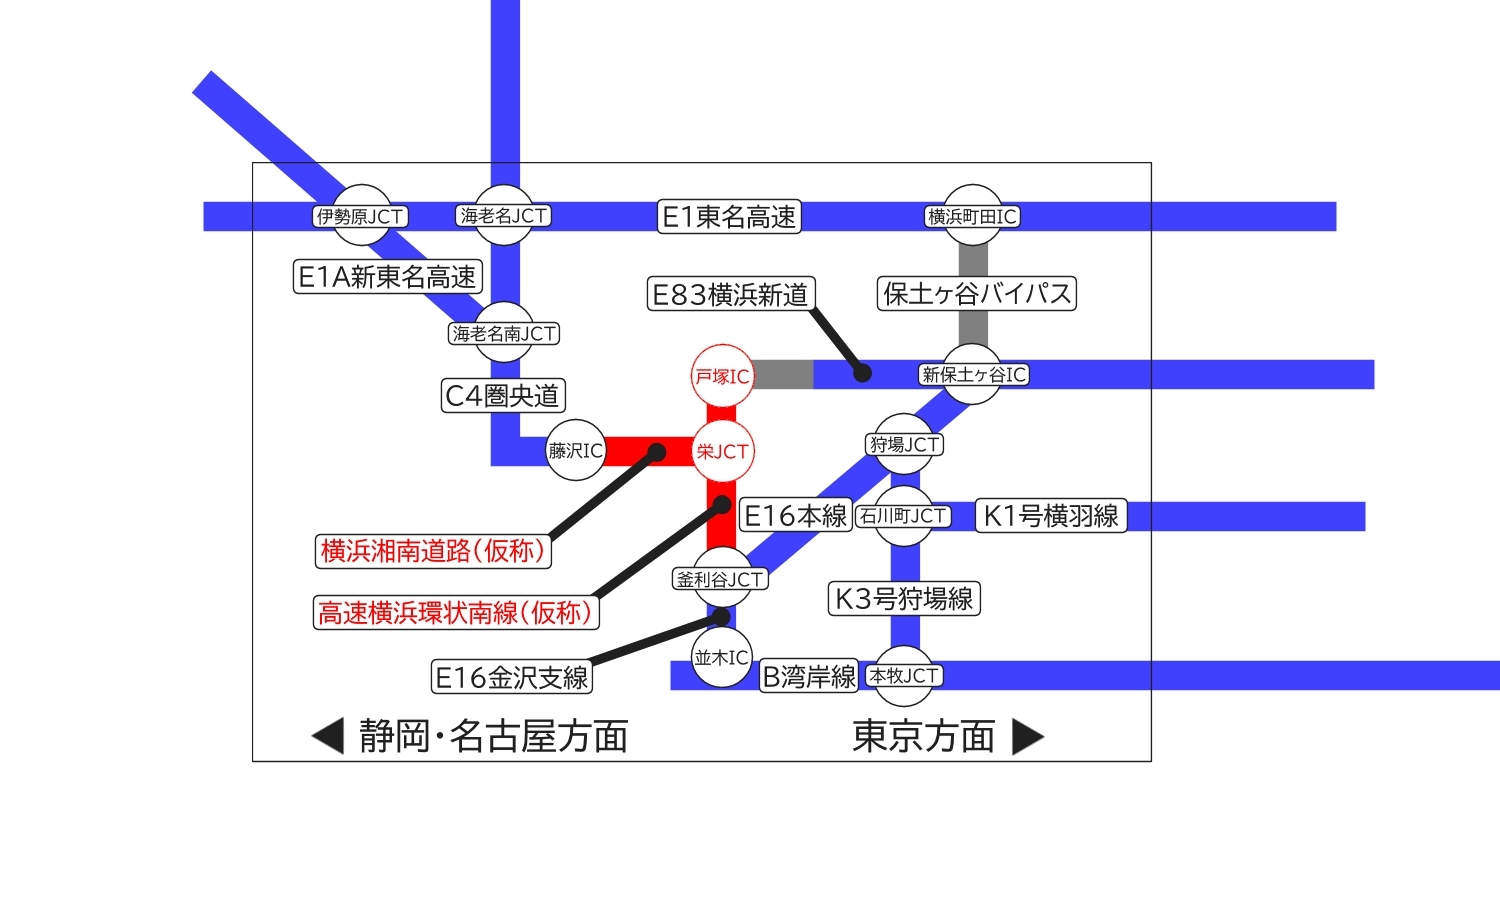 画像13。2025年に完成する横浜から新東名高速へとつながる新たな高速道路ネットワークの模式図。